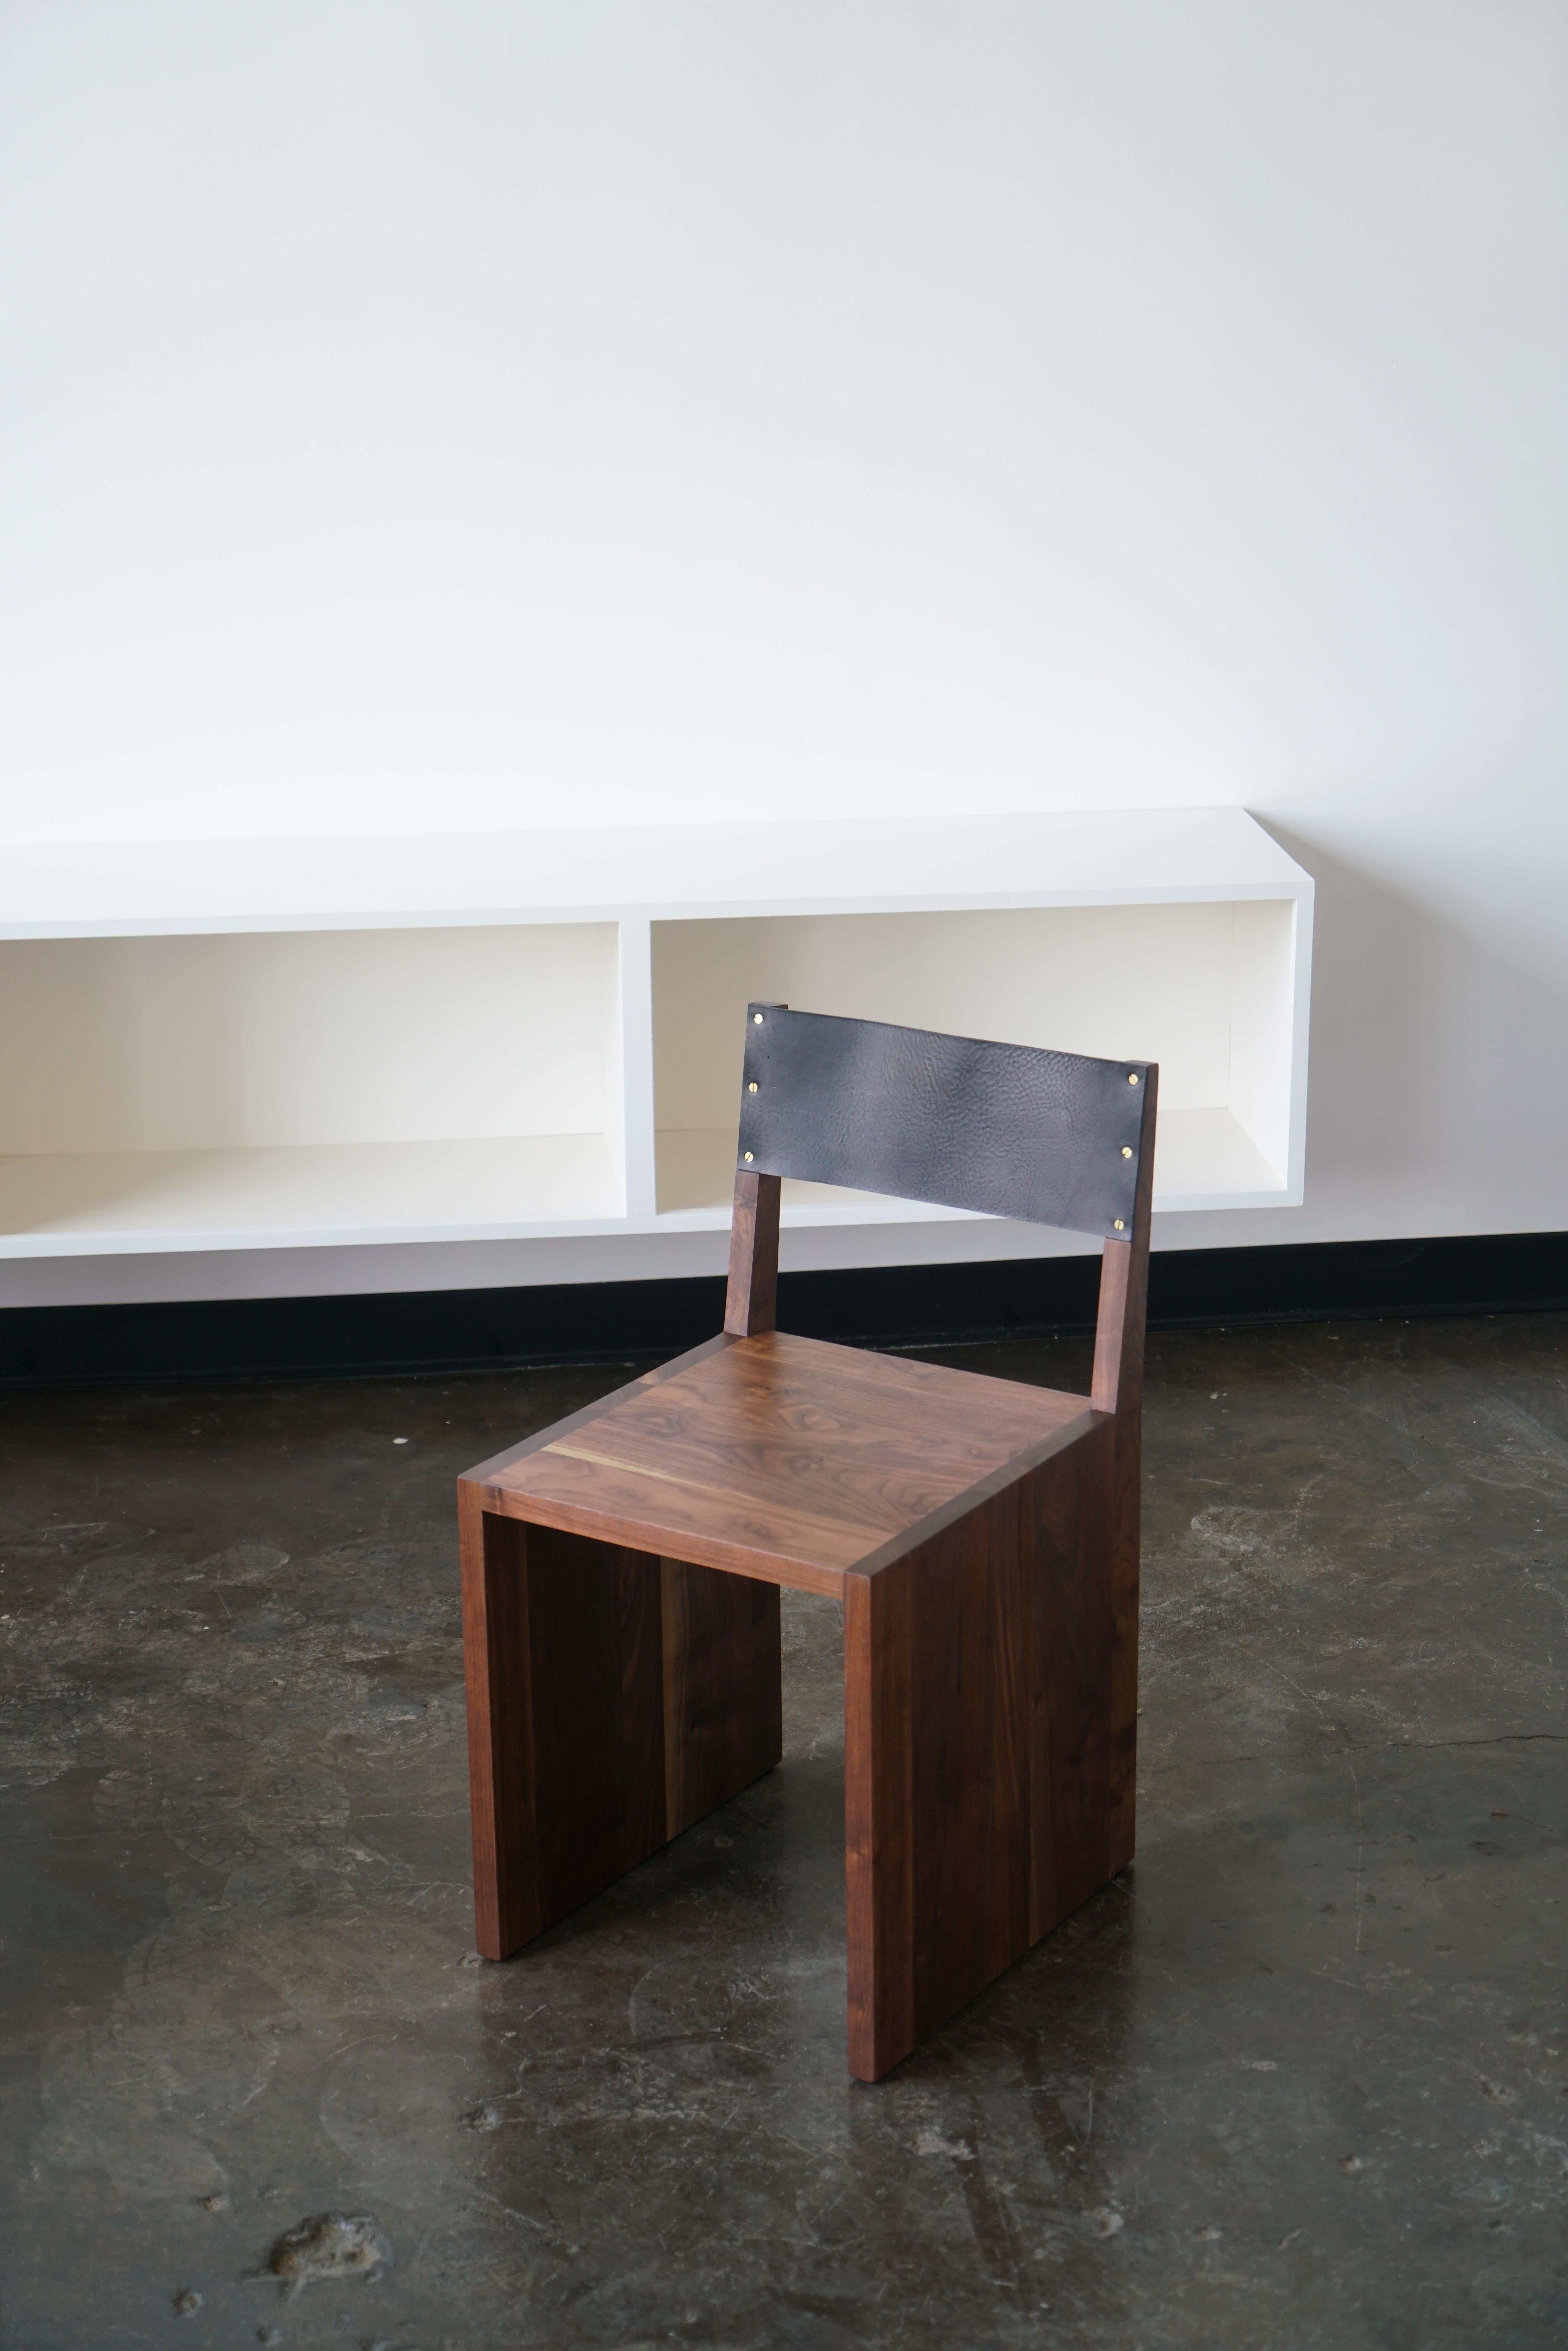 Ein minimalistischer Ess- oder Beistellstuhl aus dem Last Workshop.
Massives Nussbaumholz, schwarzes Leder, Messingschrauben.
Abmessungen: 18 